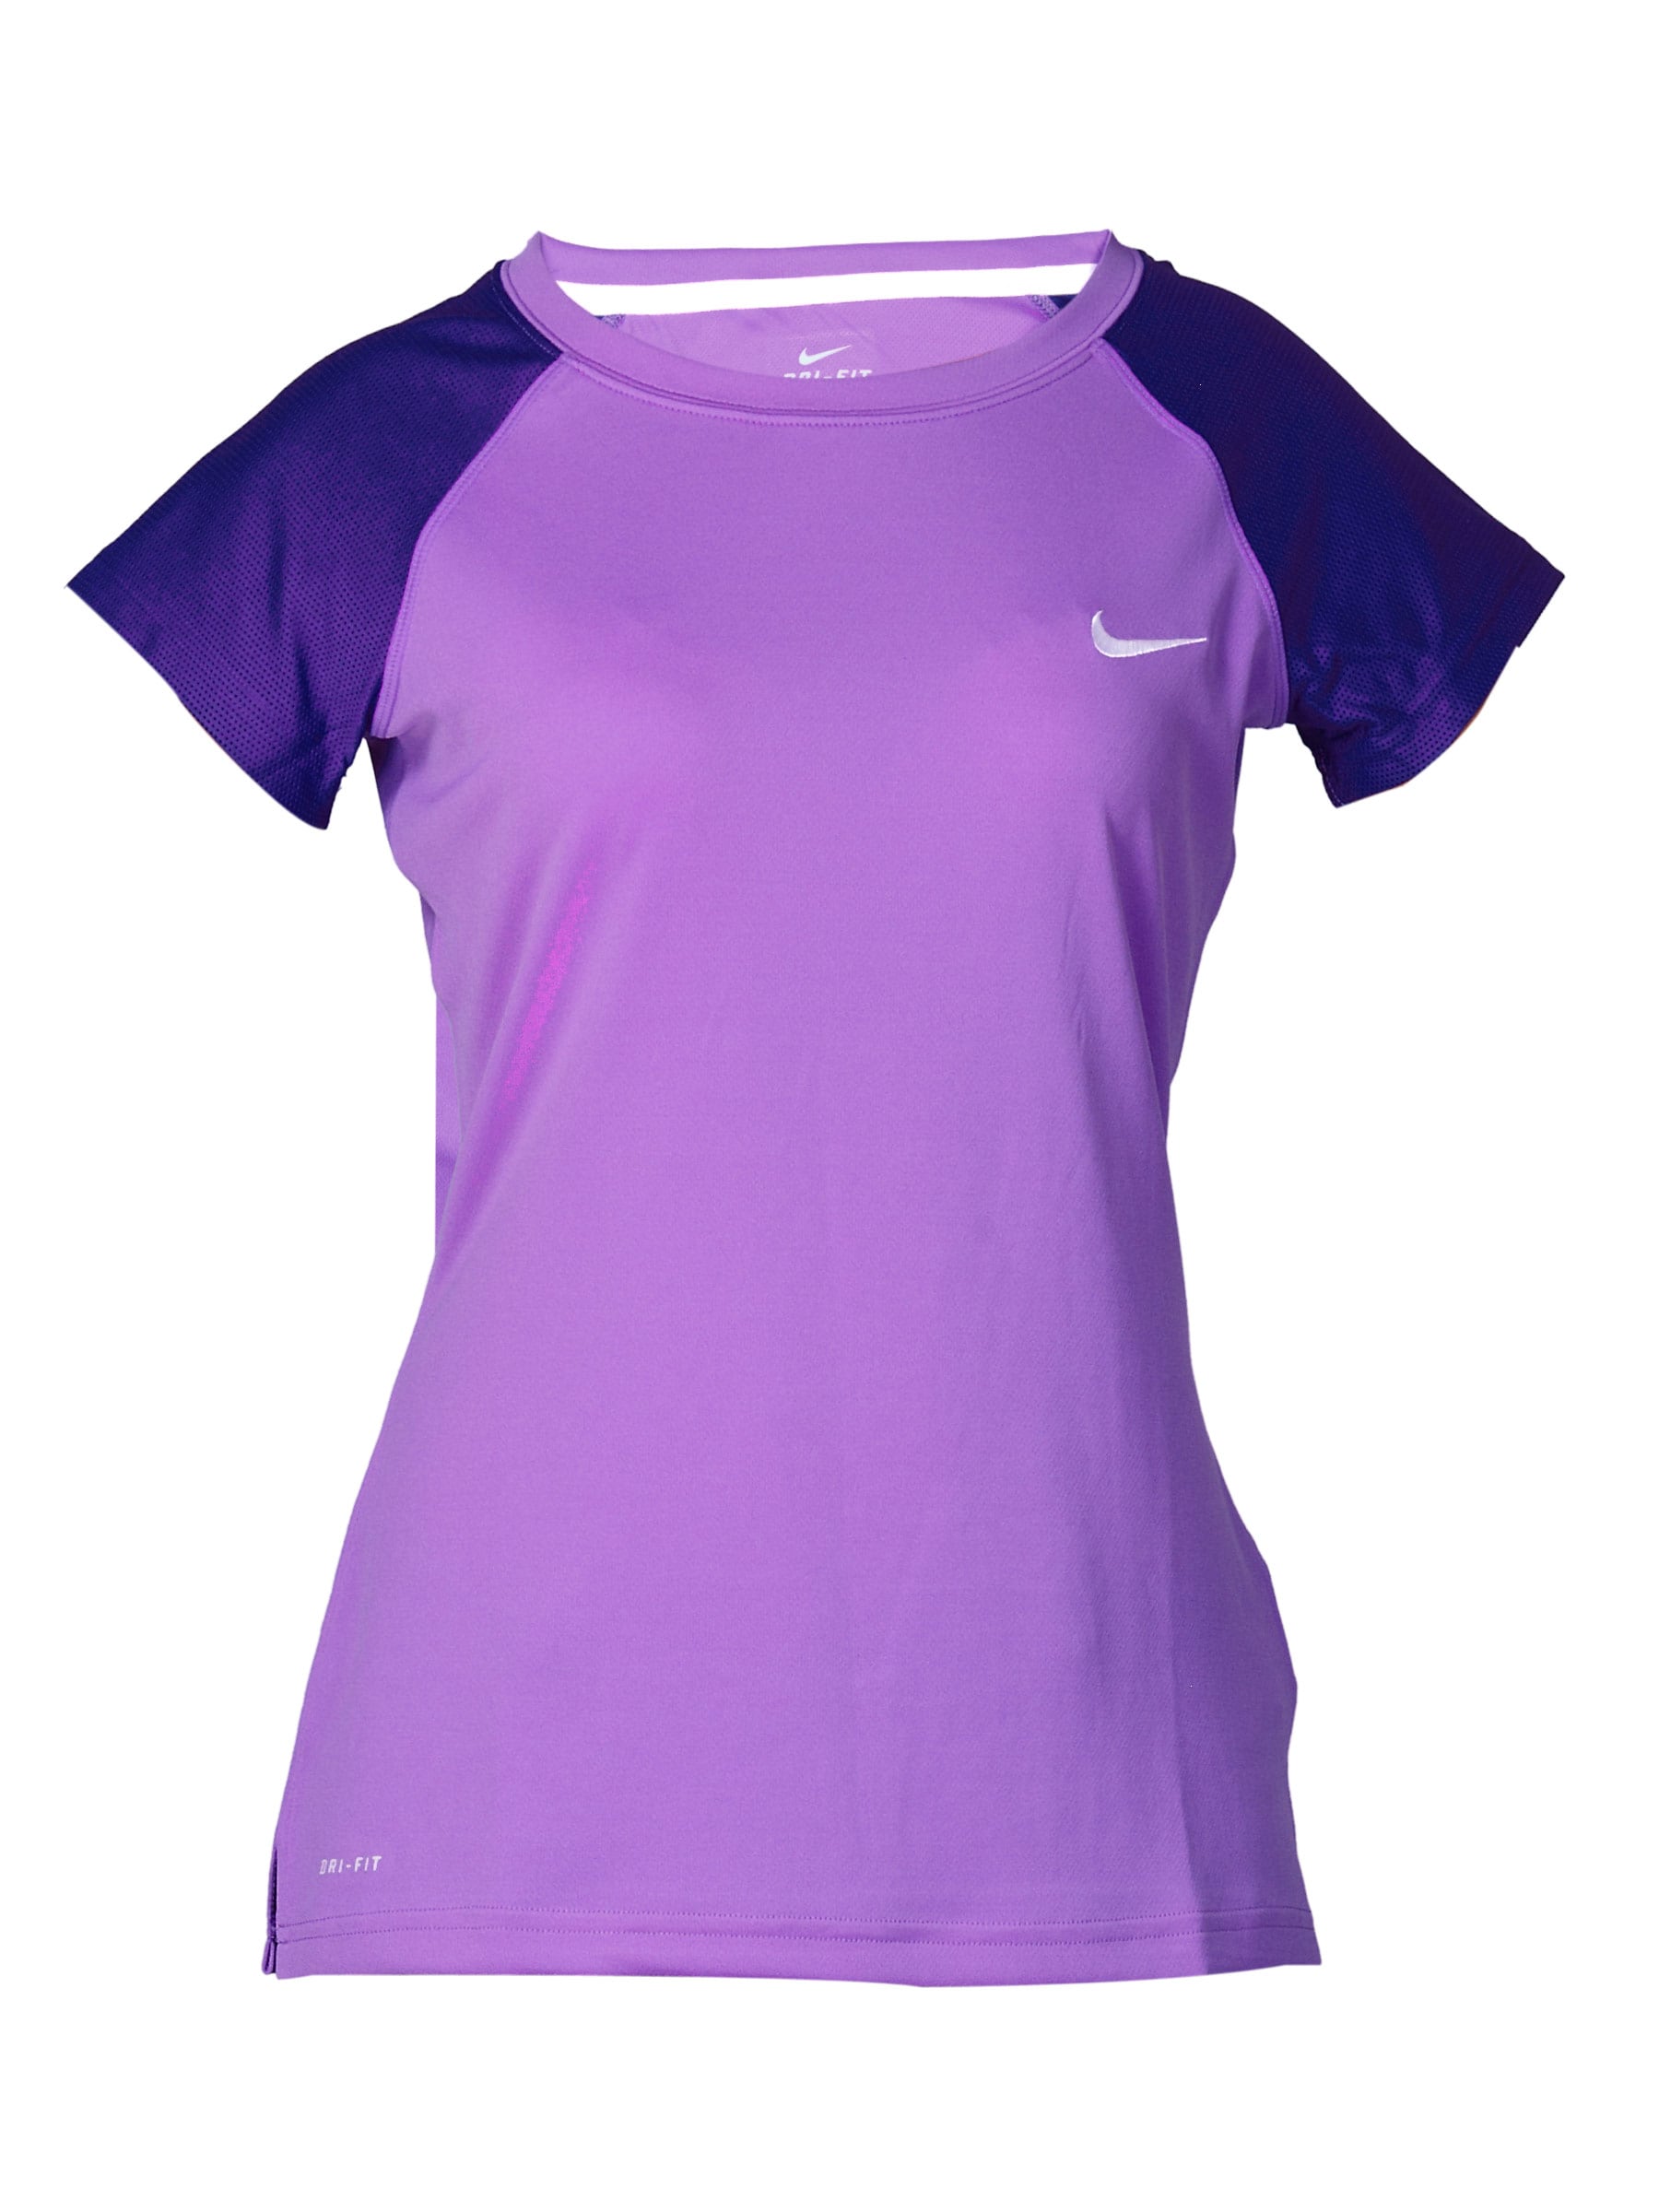 Nike Women's Class Purple T-shirt